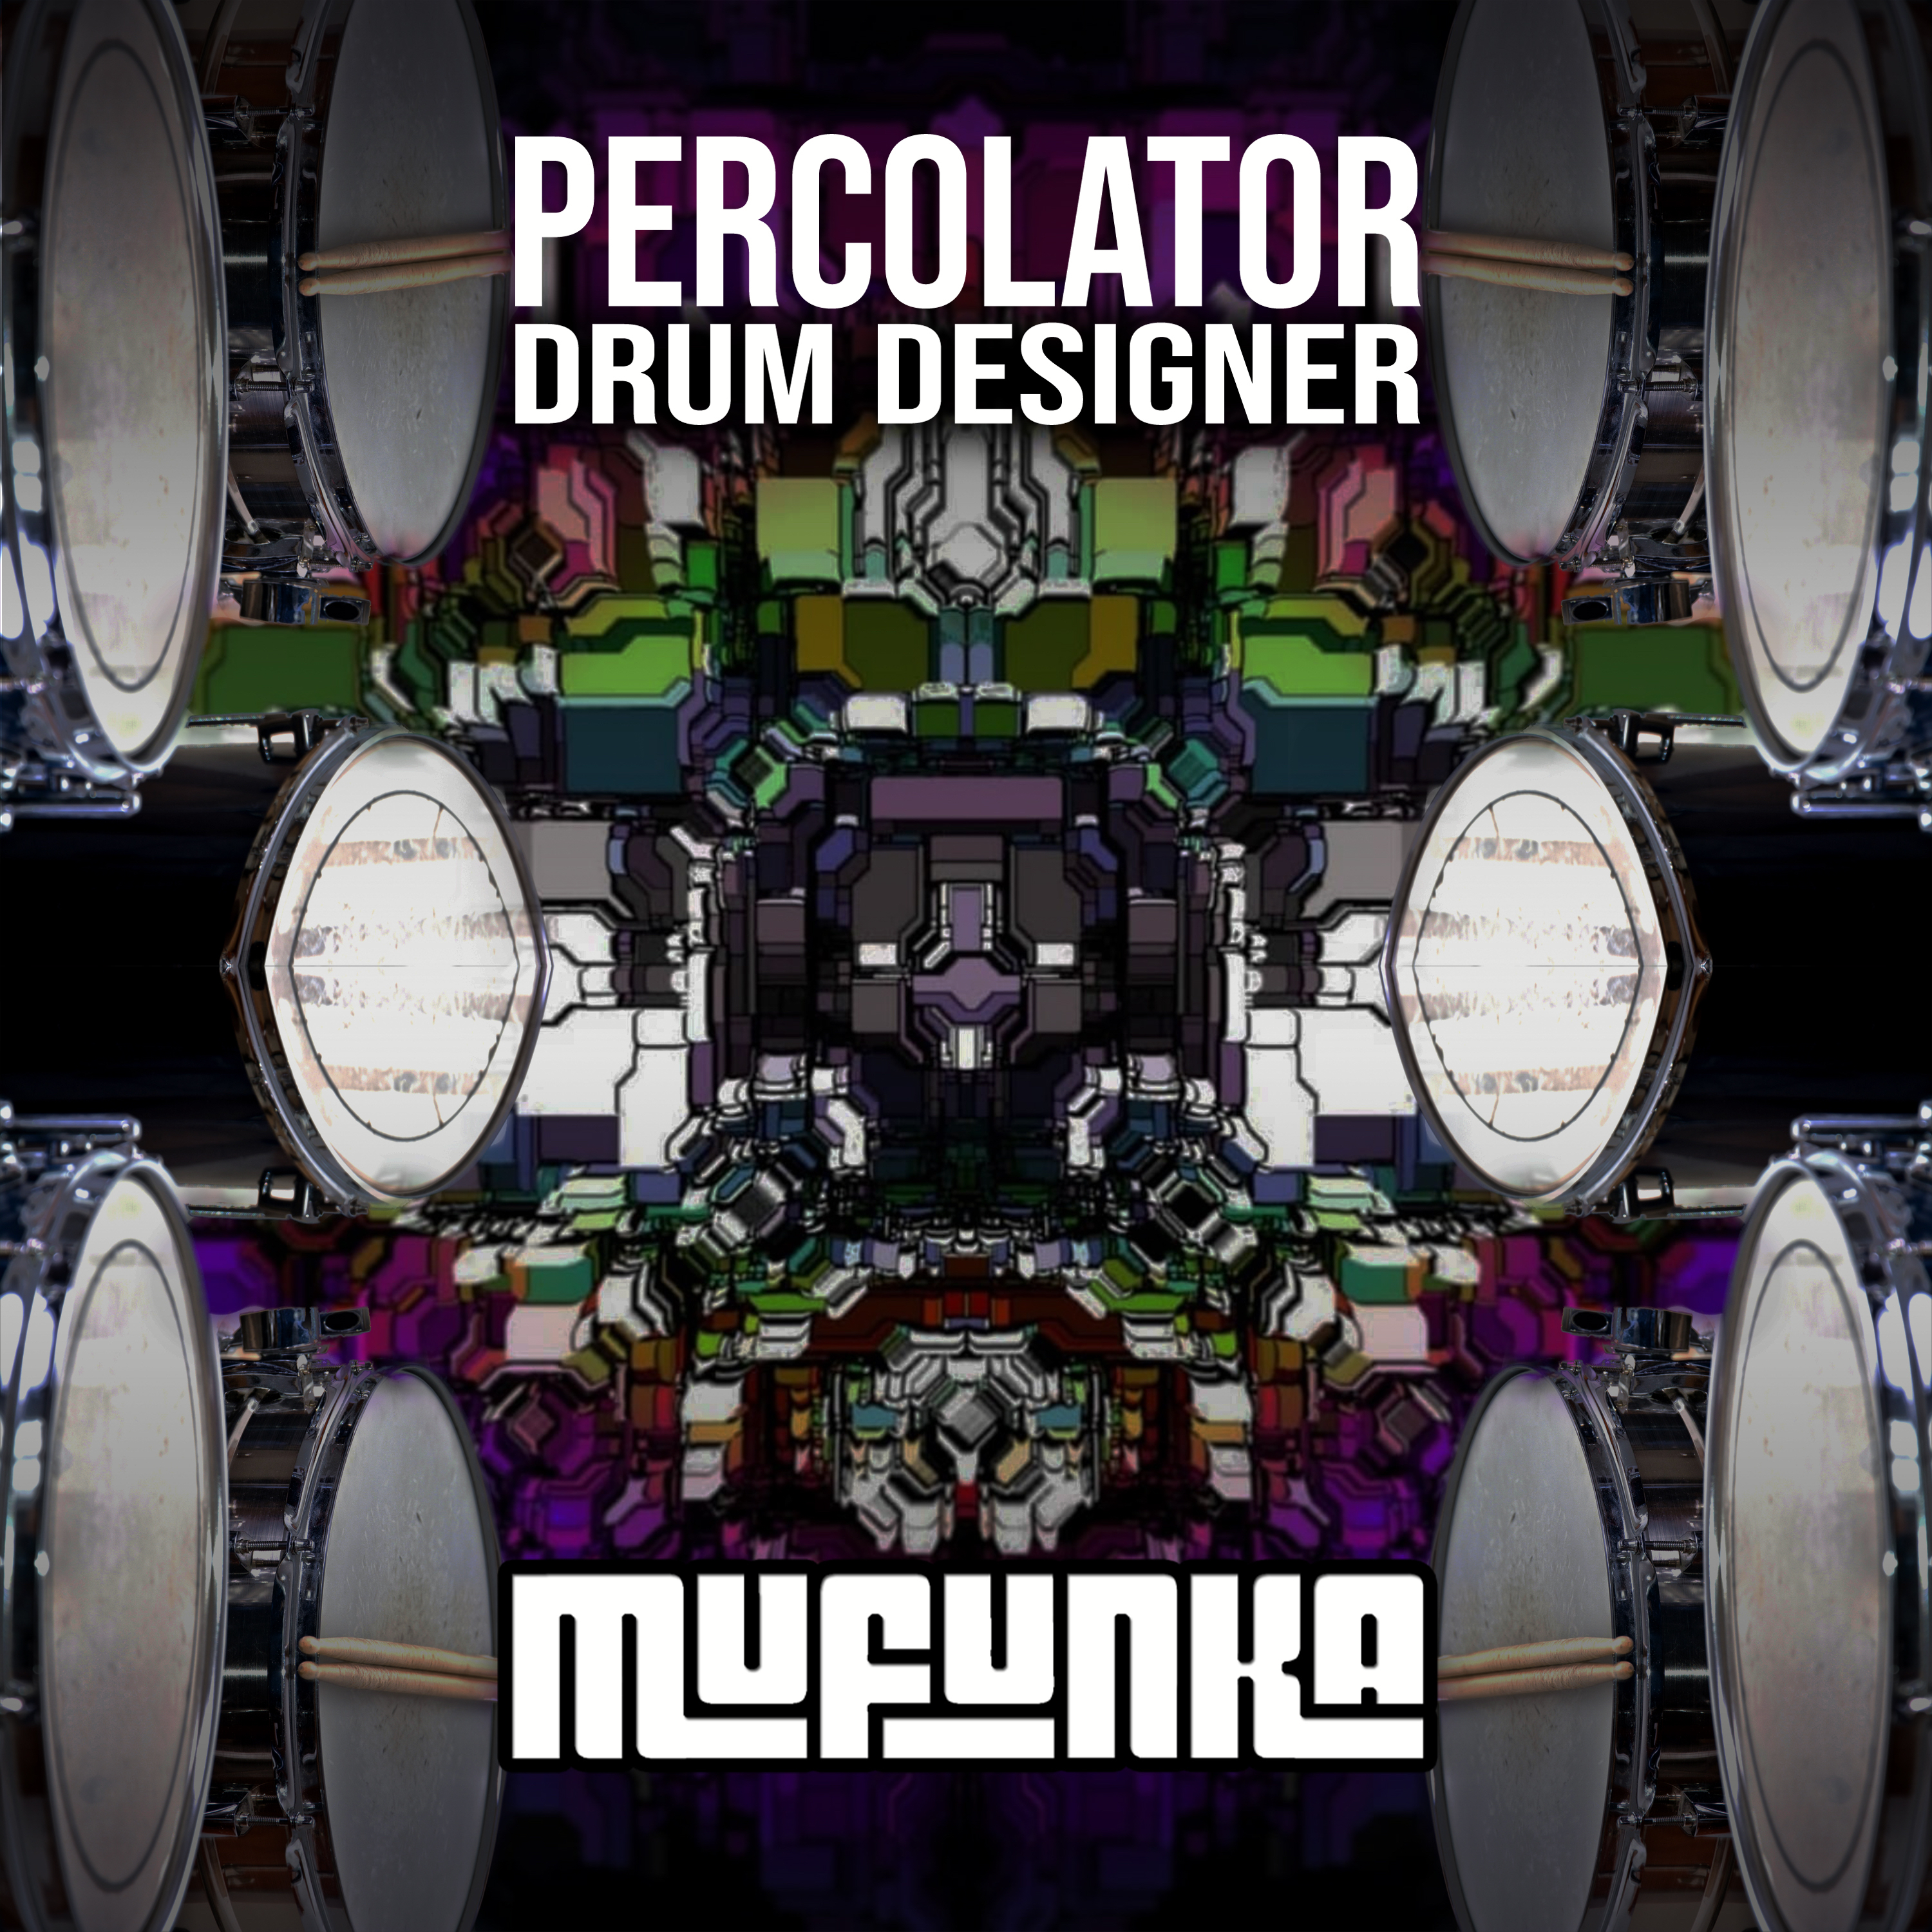 Percolator Drum Designer